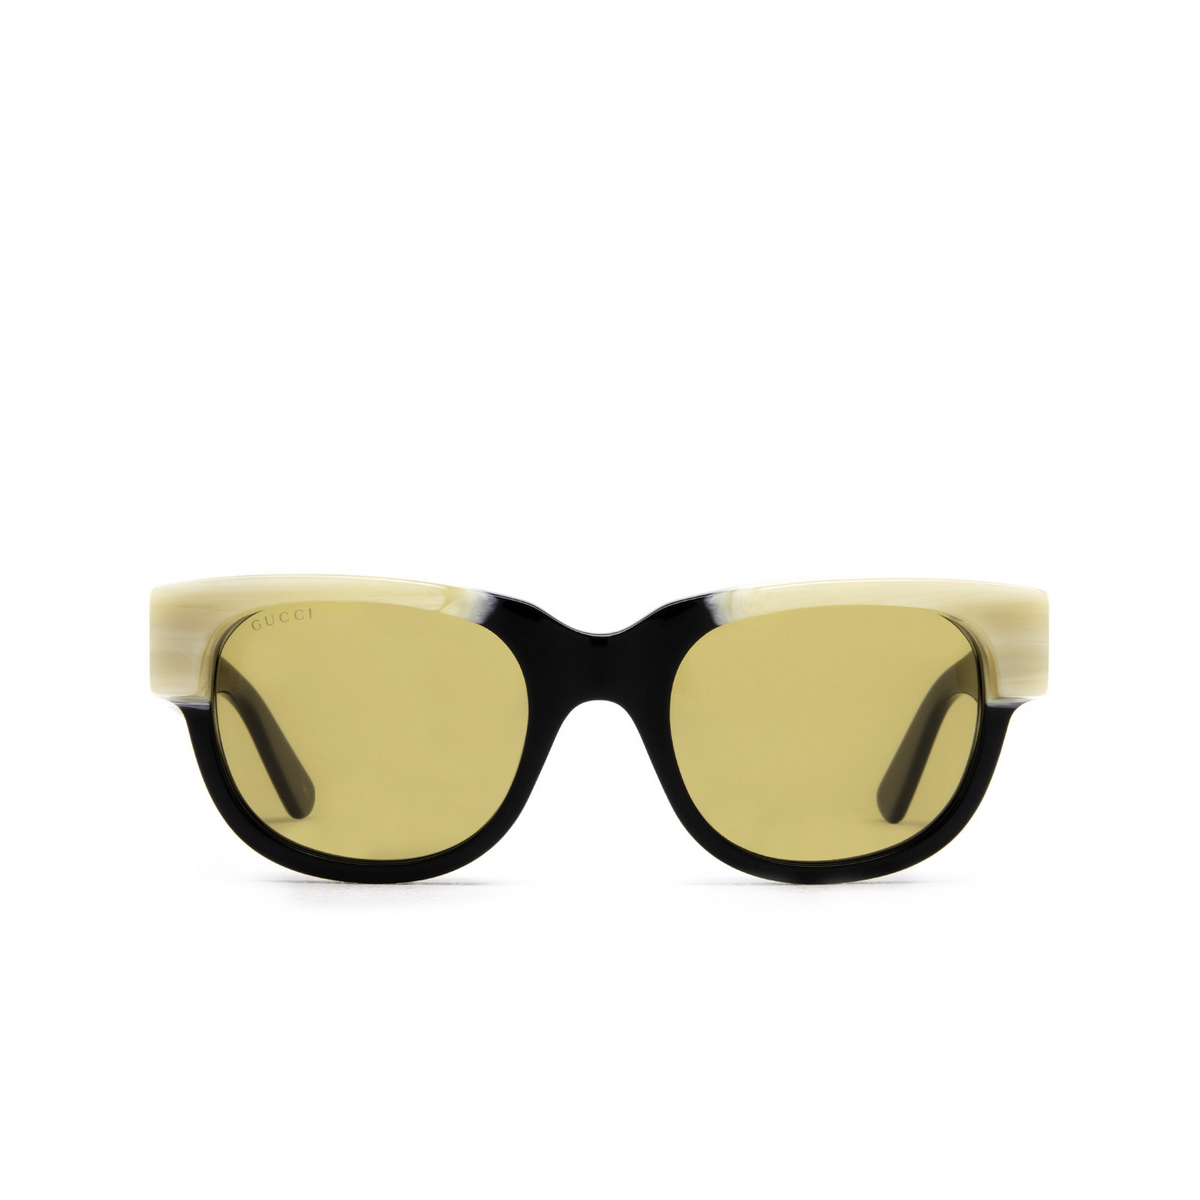 Gucci® Square Sunglasses: GG1165S color Black 001 - front view.